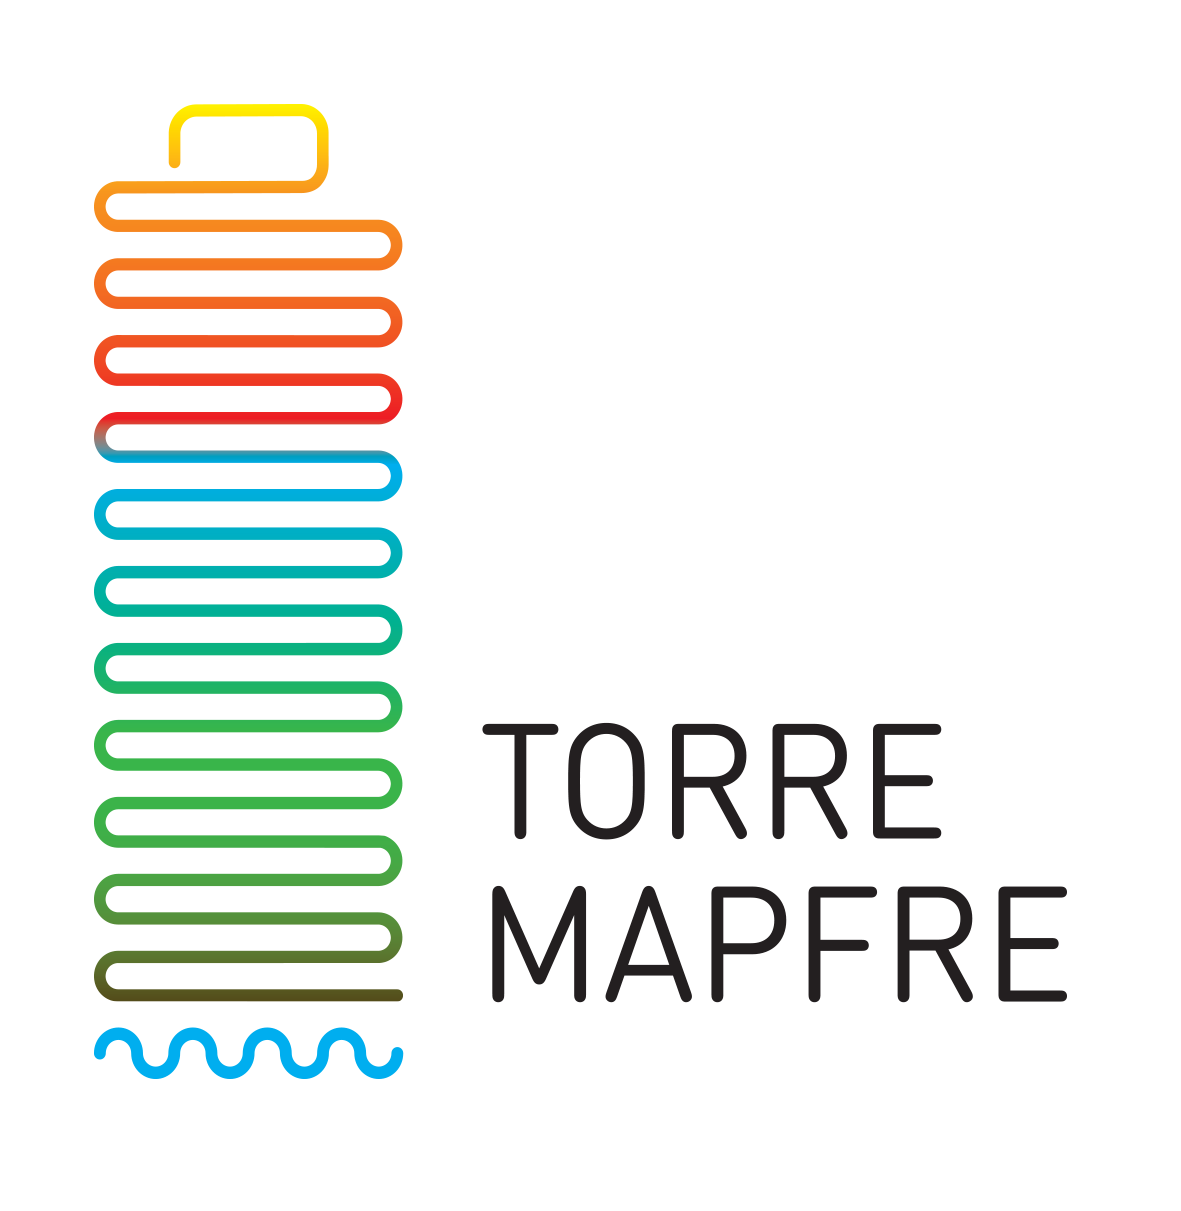 01 logo torremapfre